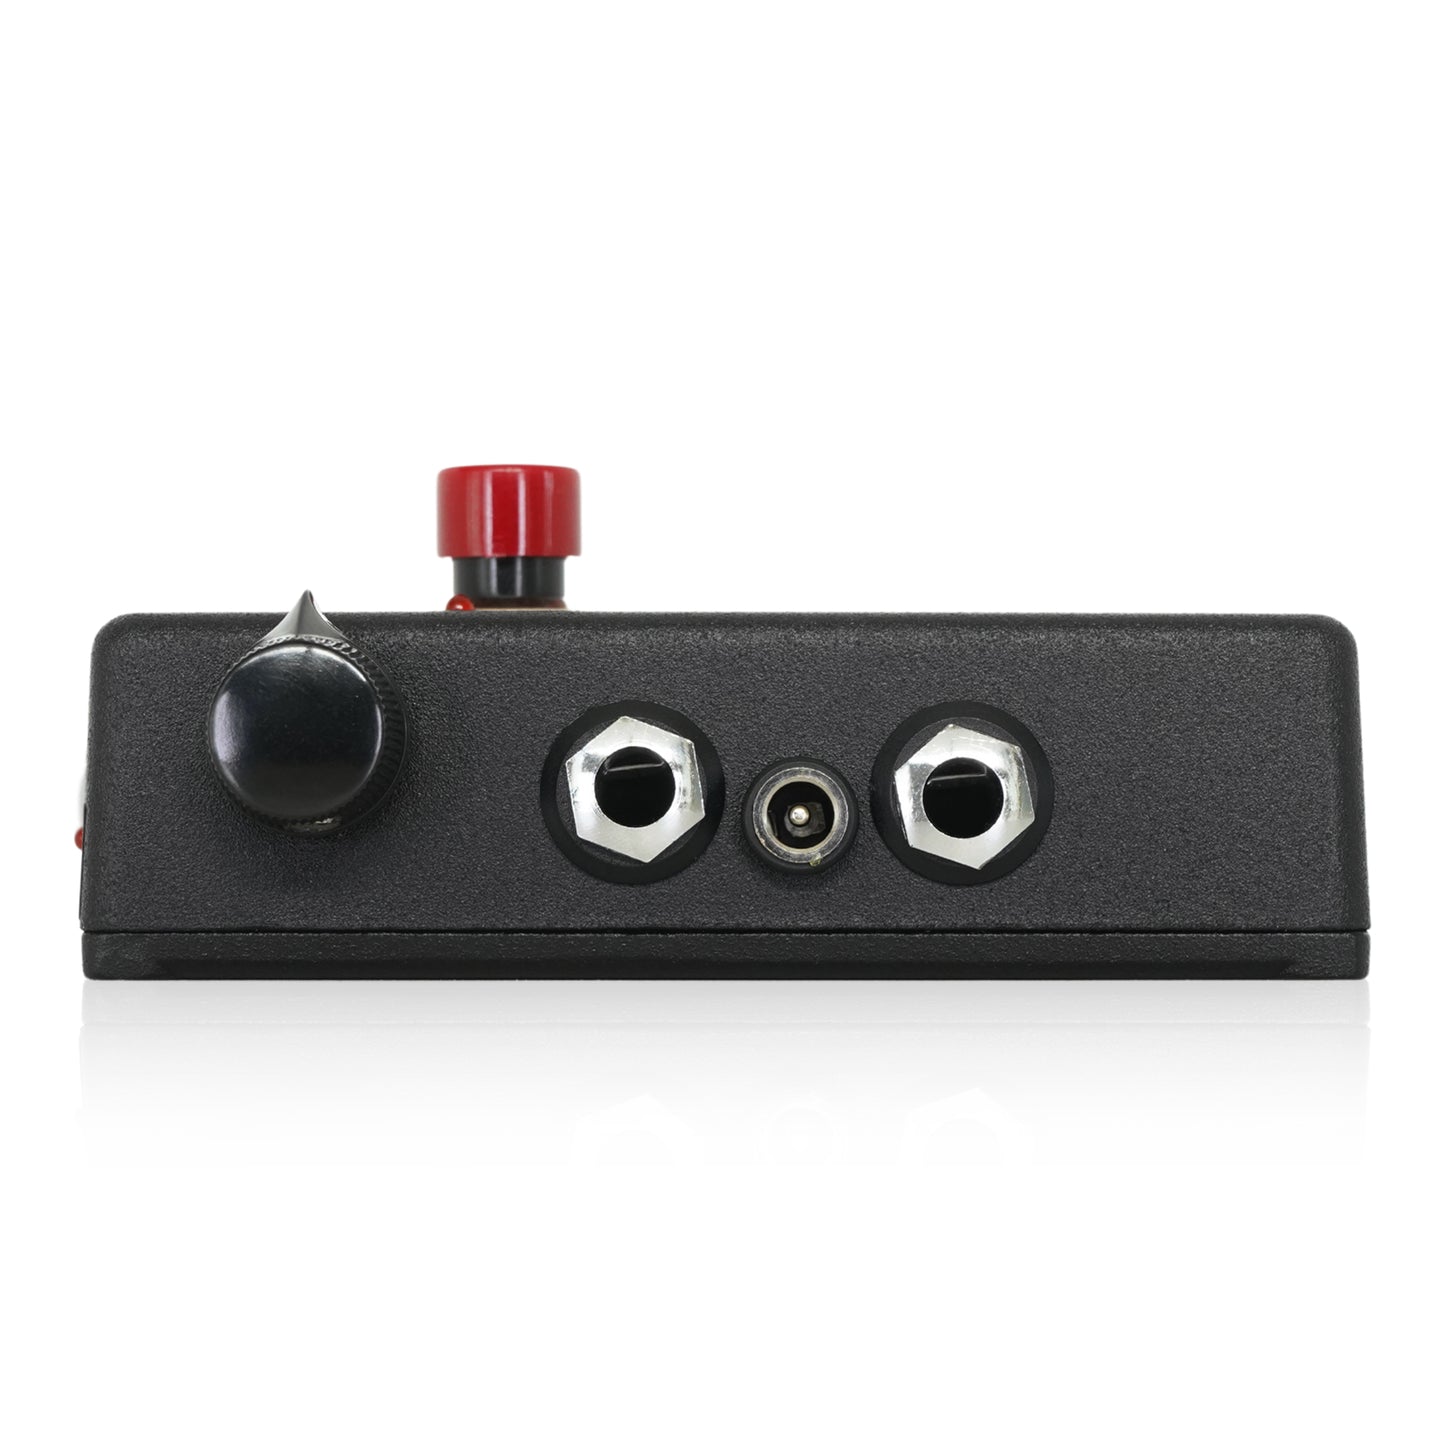 Fire-Eye/Red-Eye Instrument Preamplifier